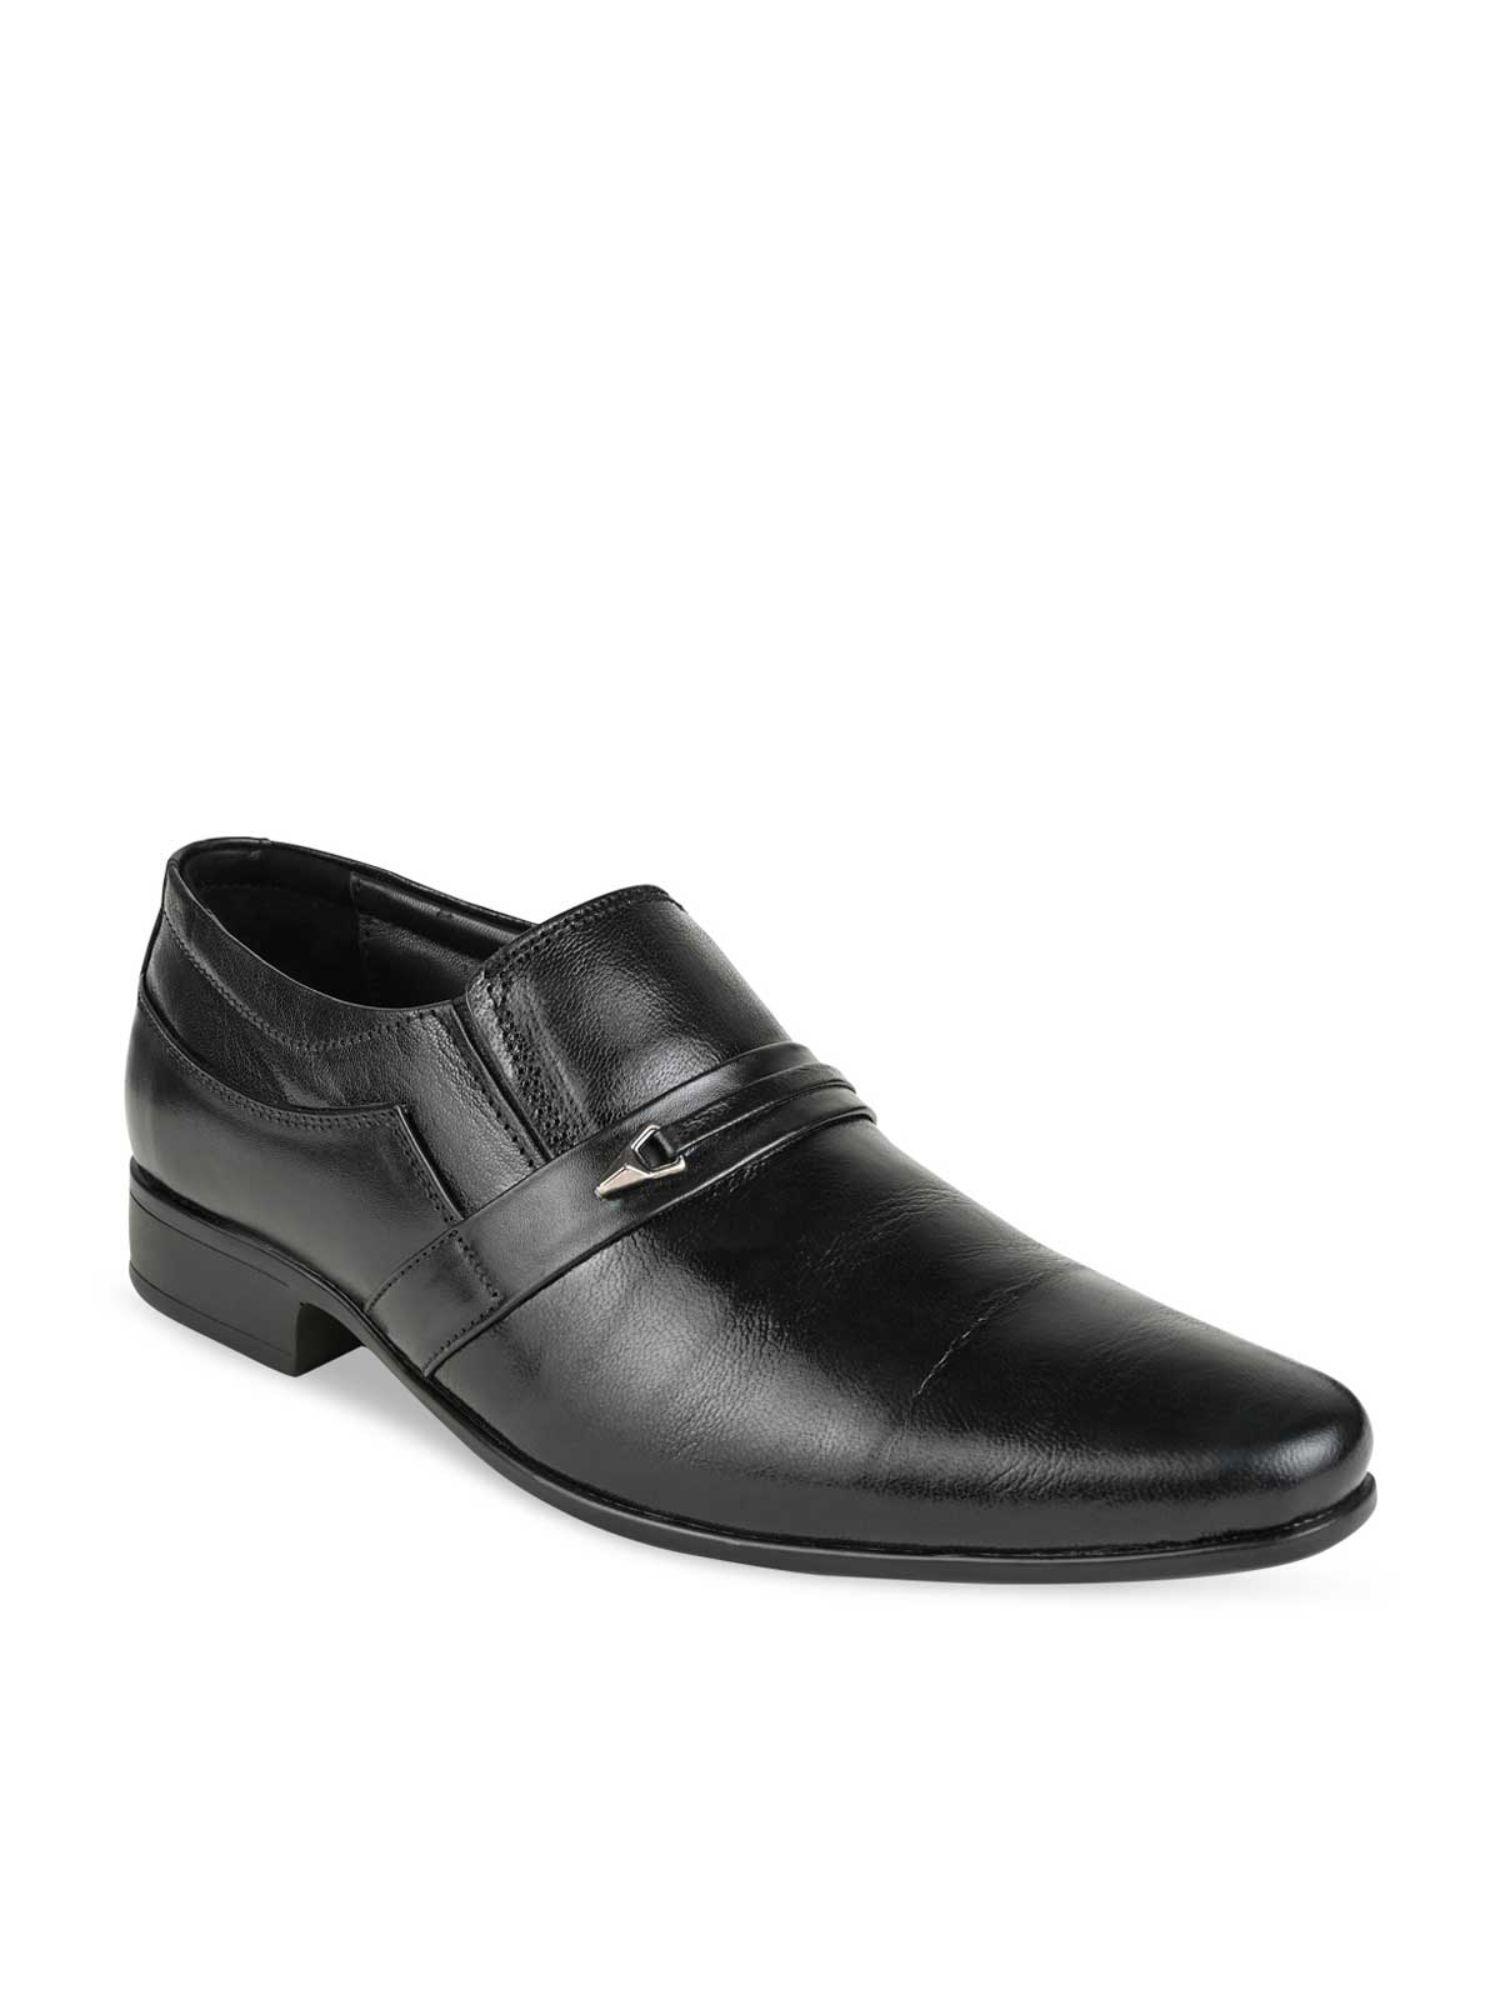 men-black-solid-leather-formal-slip-on-shoes